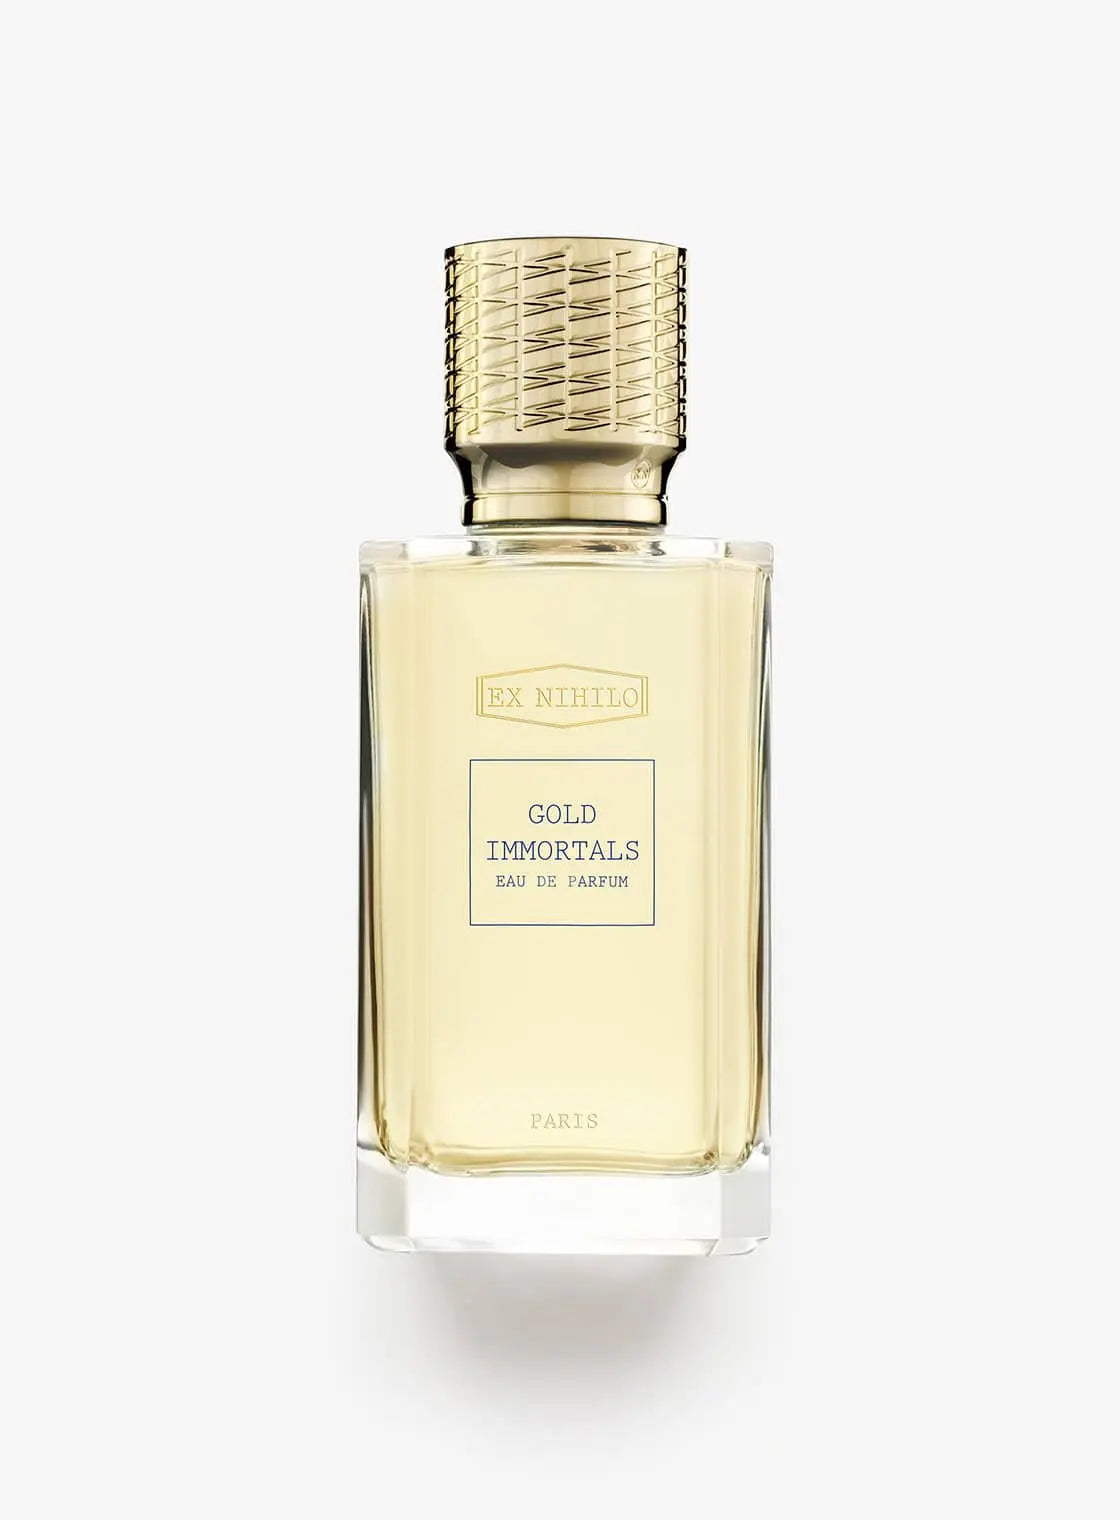 Ex nihilo Gold Immortals eau de parfum - 100 ml